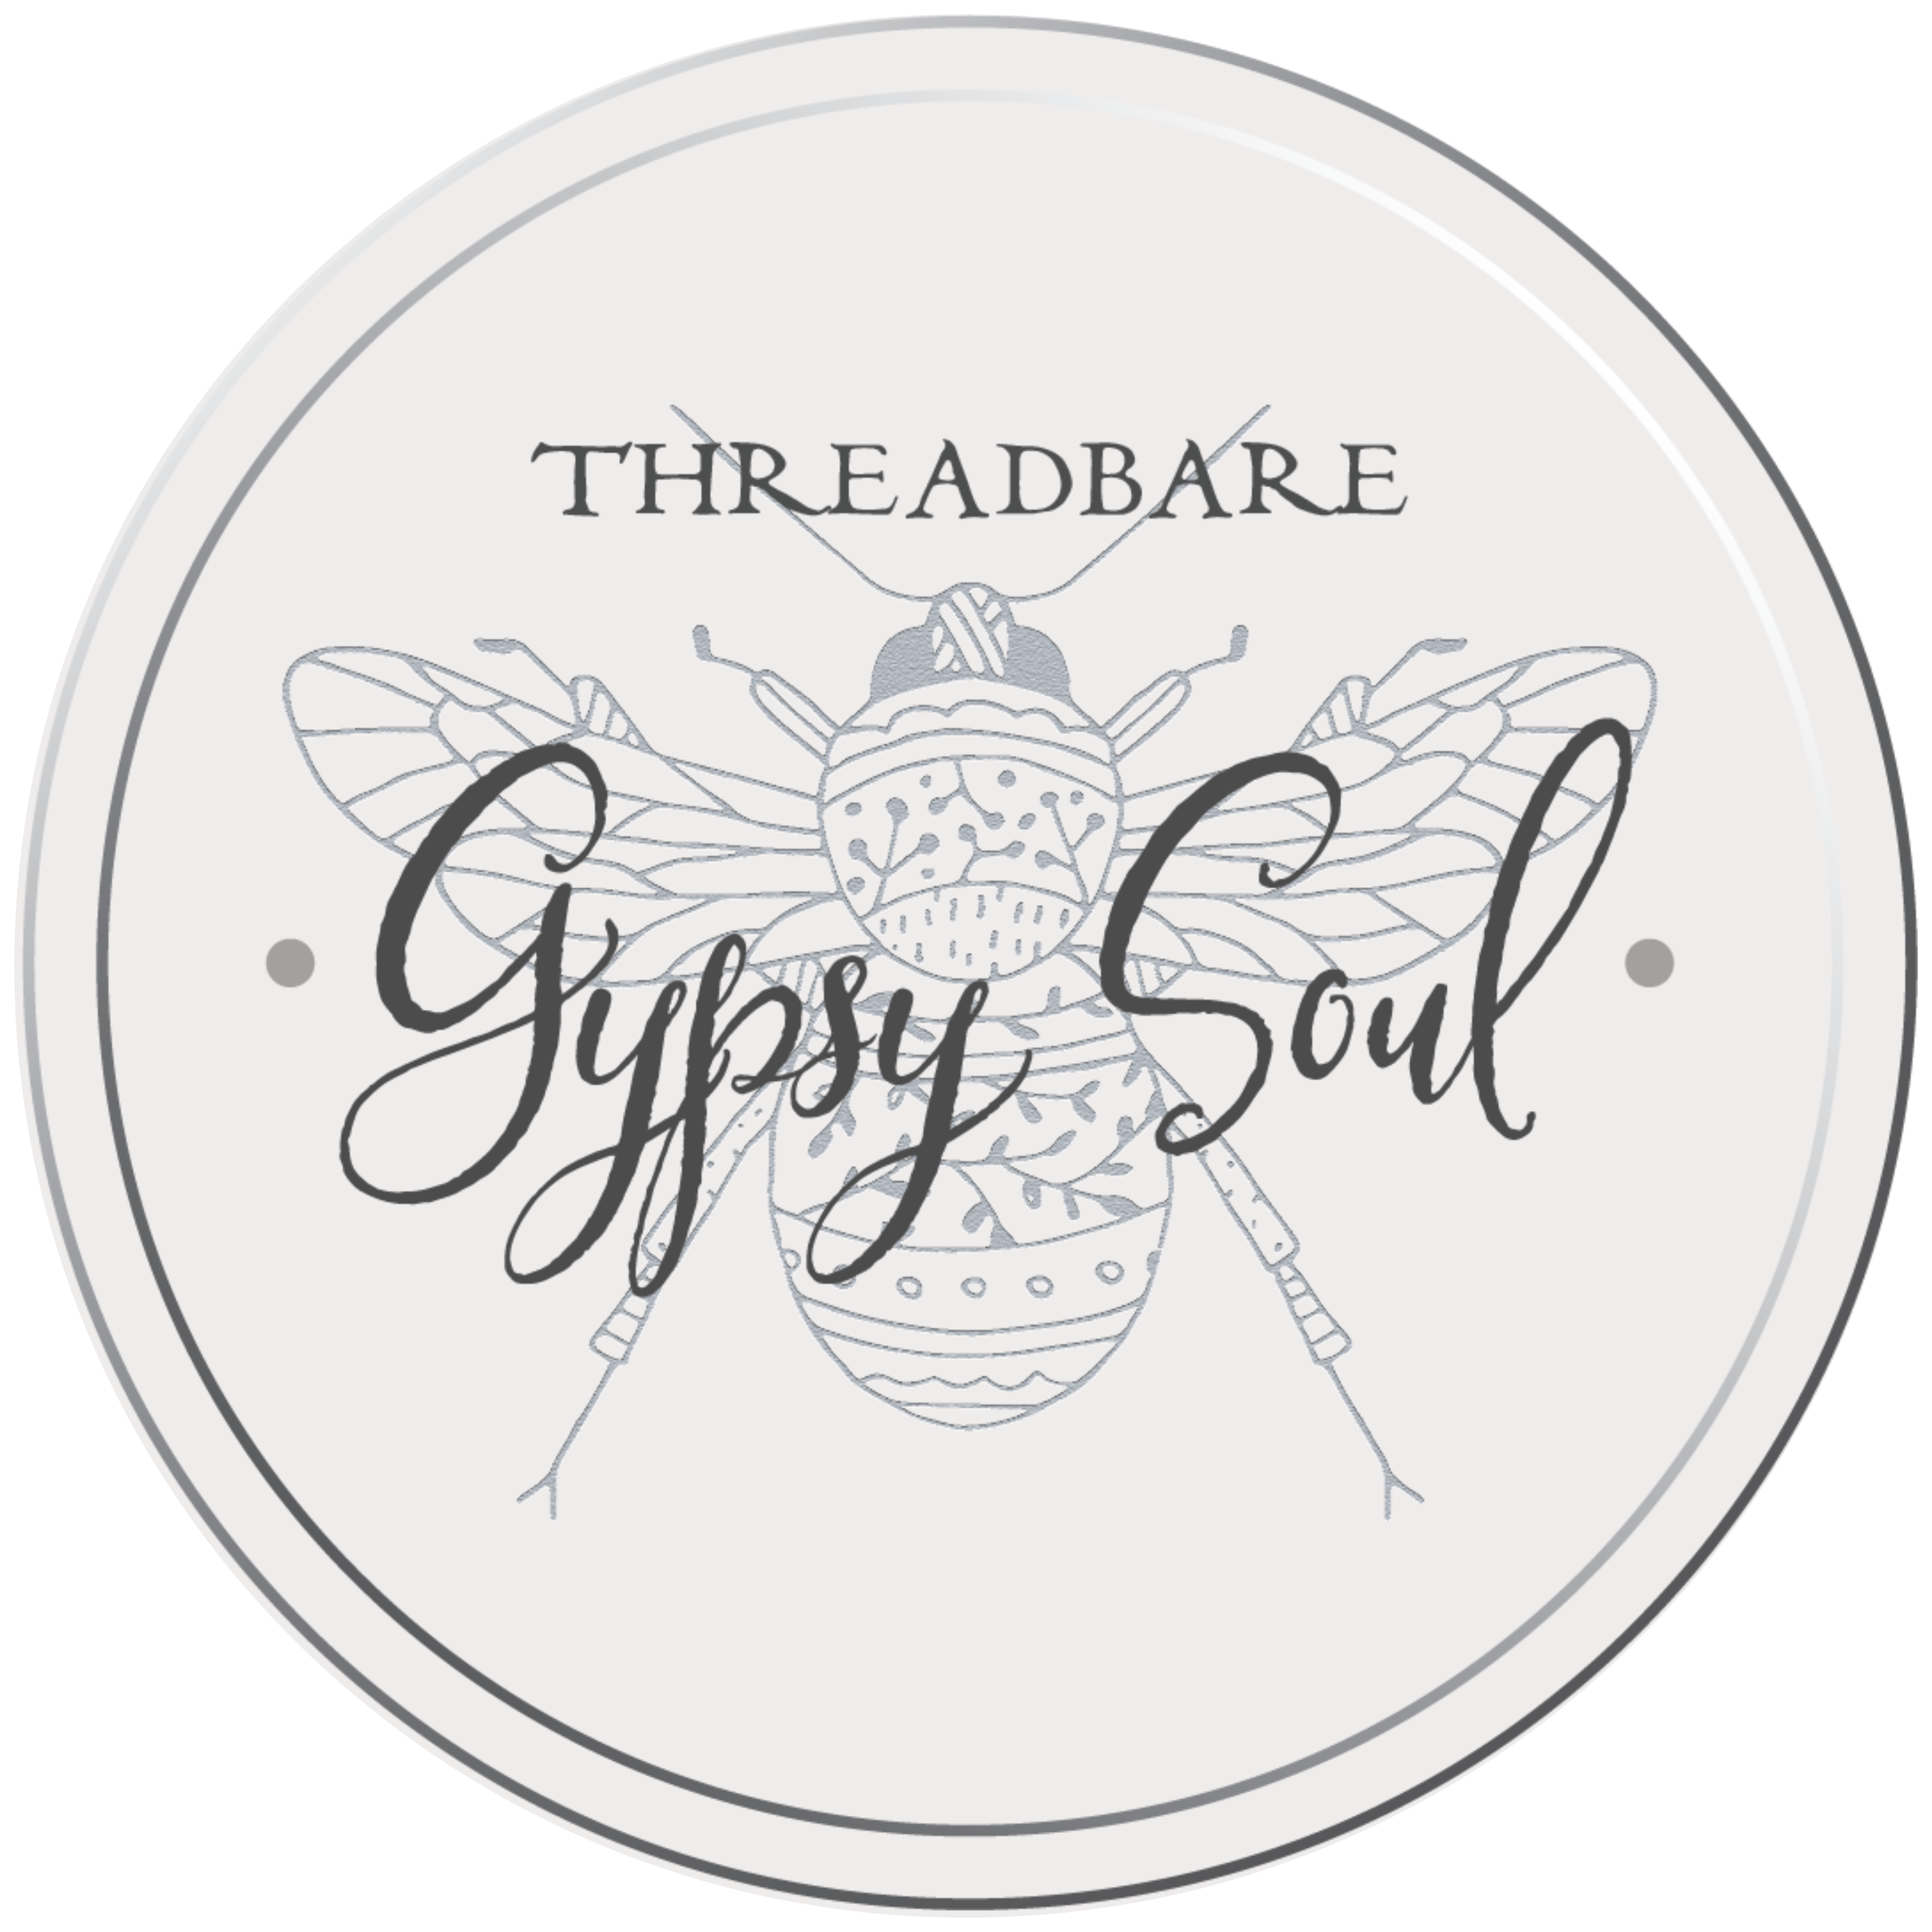 tbgs-logo-greige-Threadbare Gypsy Soul